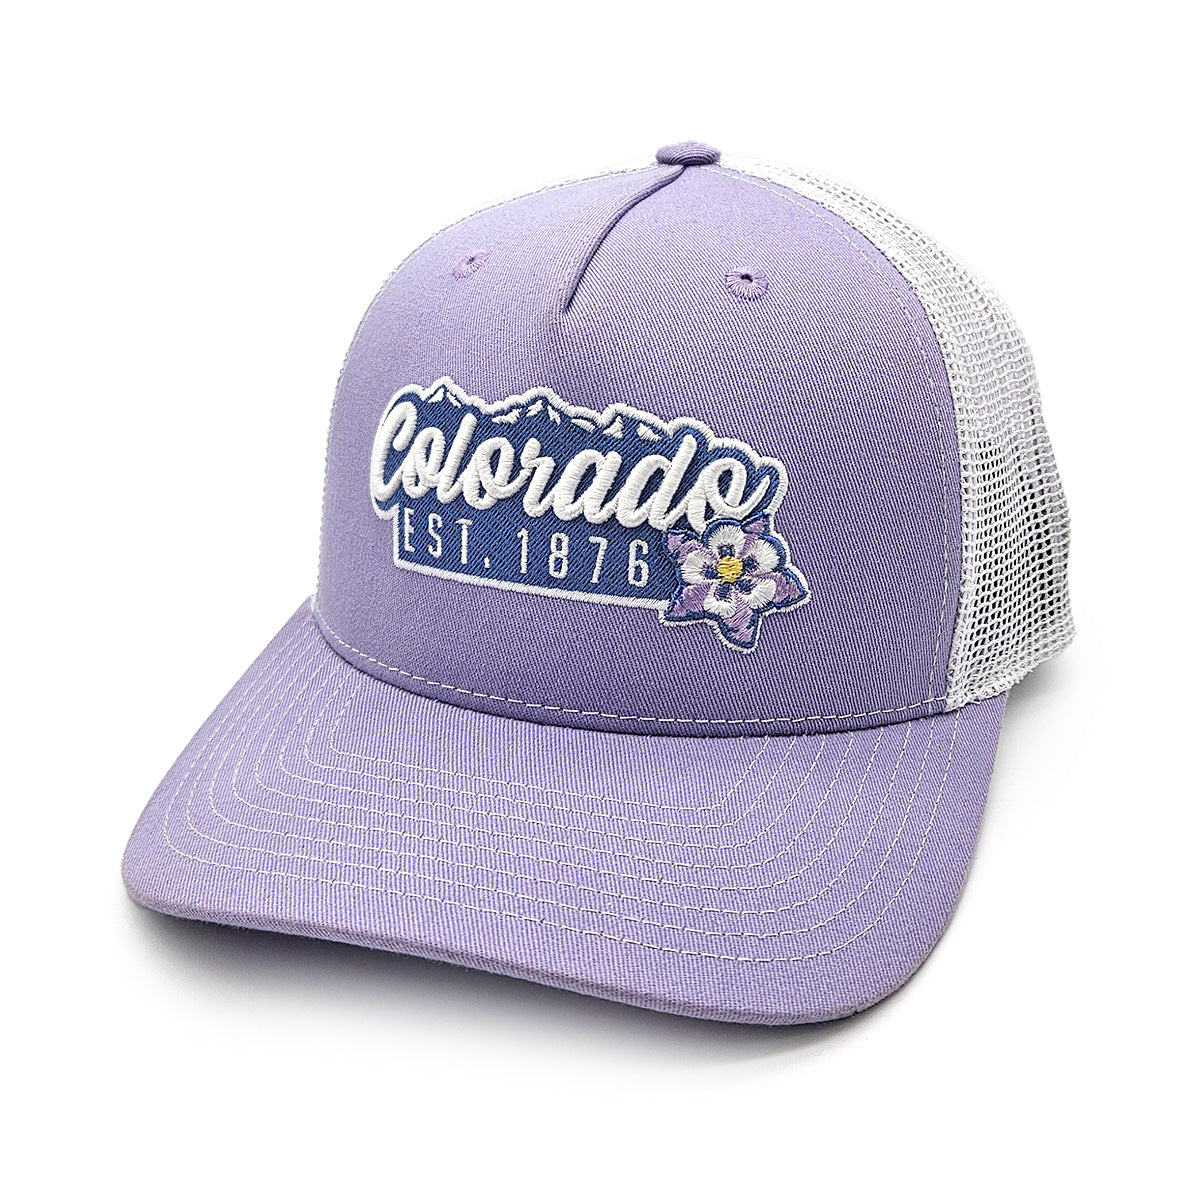 Mountain Bloom Trucker Hat - Purple/White